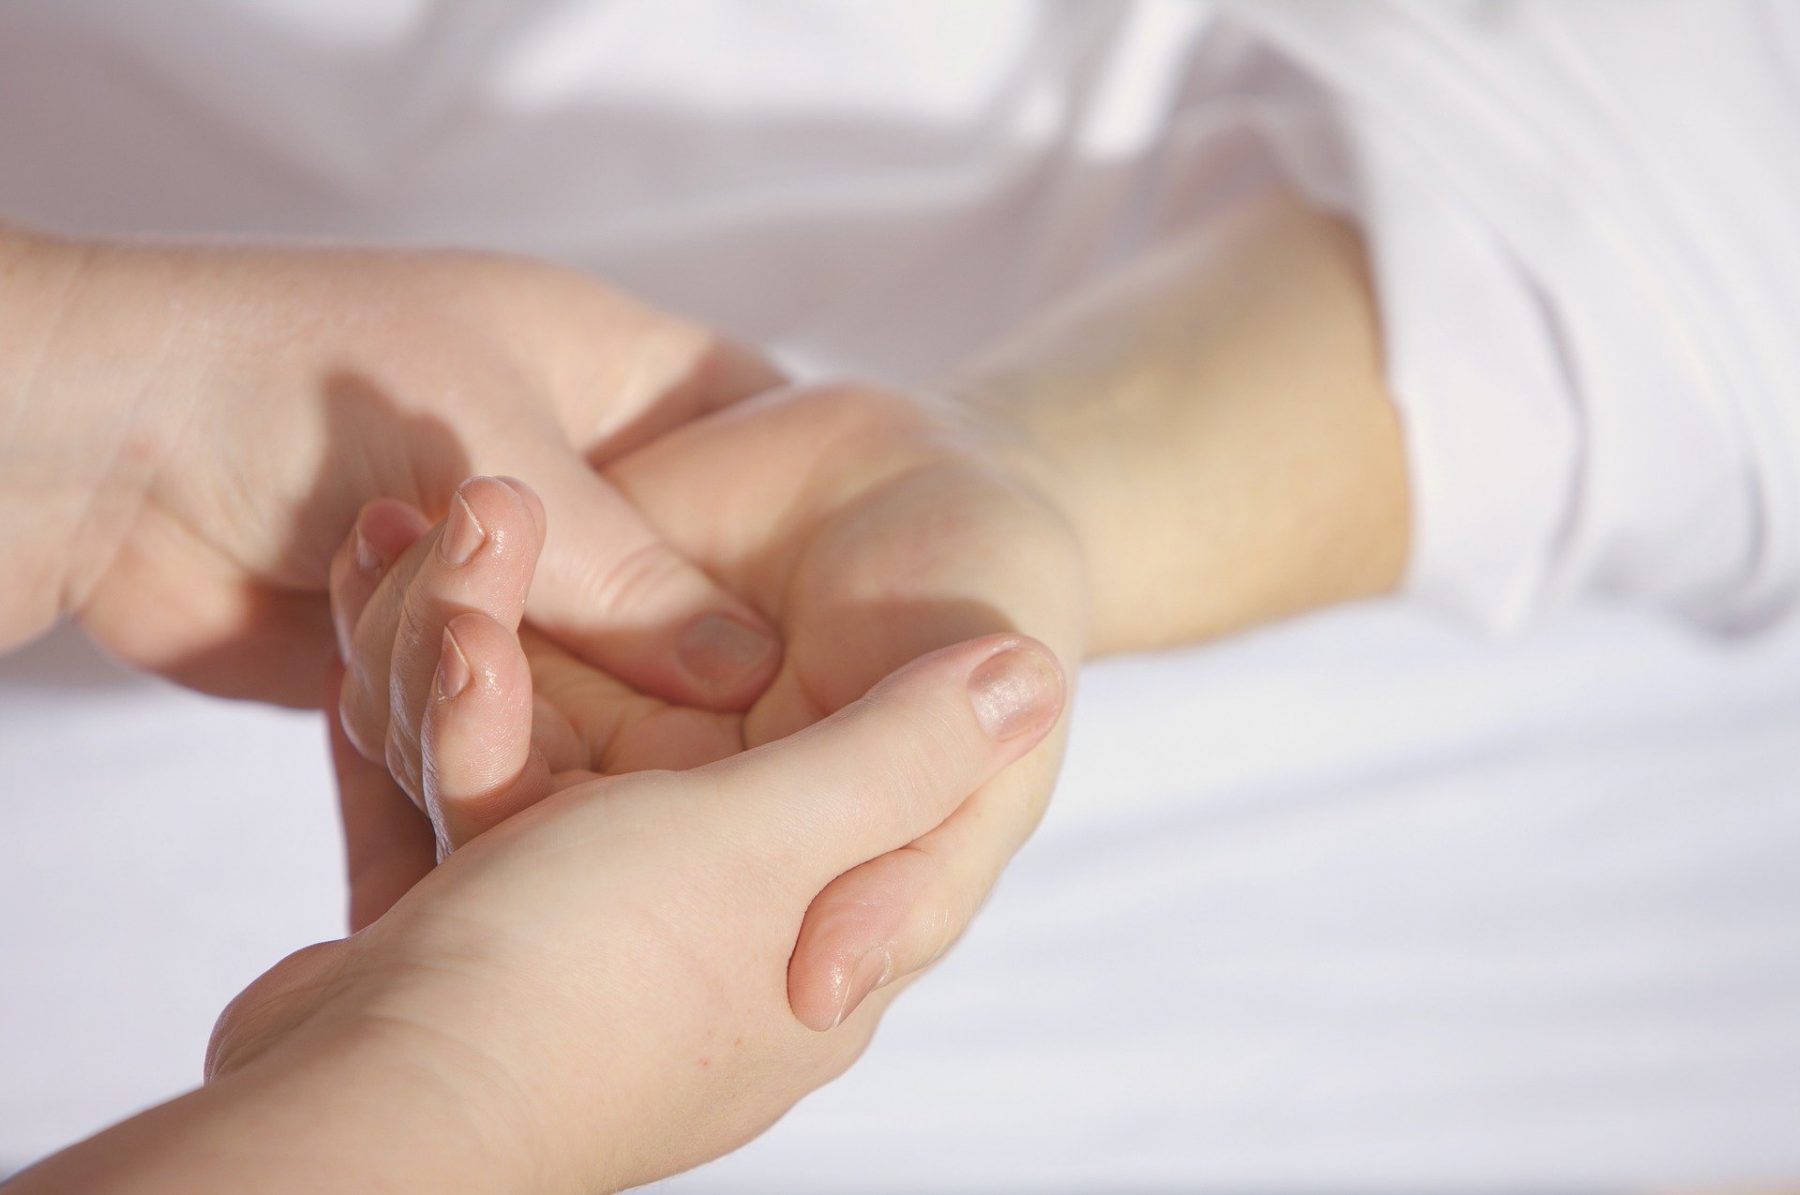 Αγγειακή διαταραχή: Τι μπορεί να δηλώνει ο πόνος στο χέρι σε νέους με καλή φυσική κατάσταση